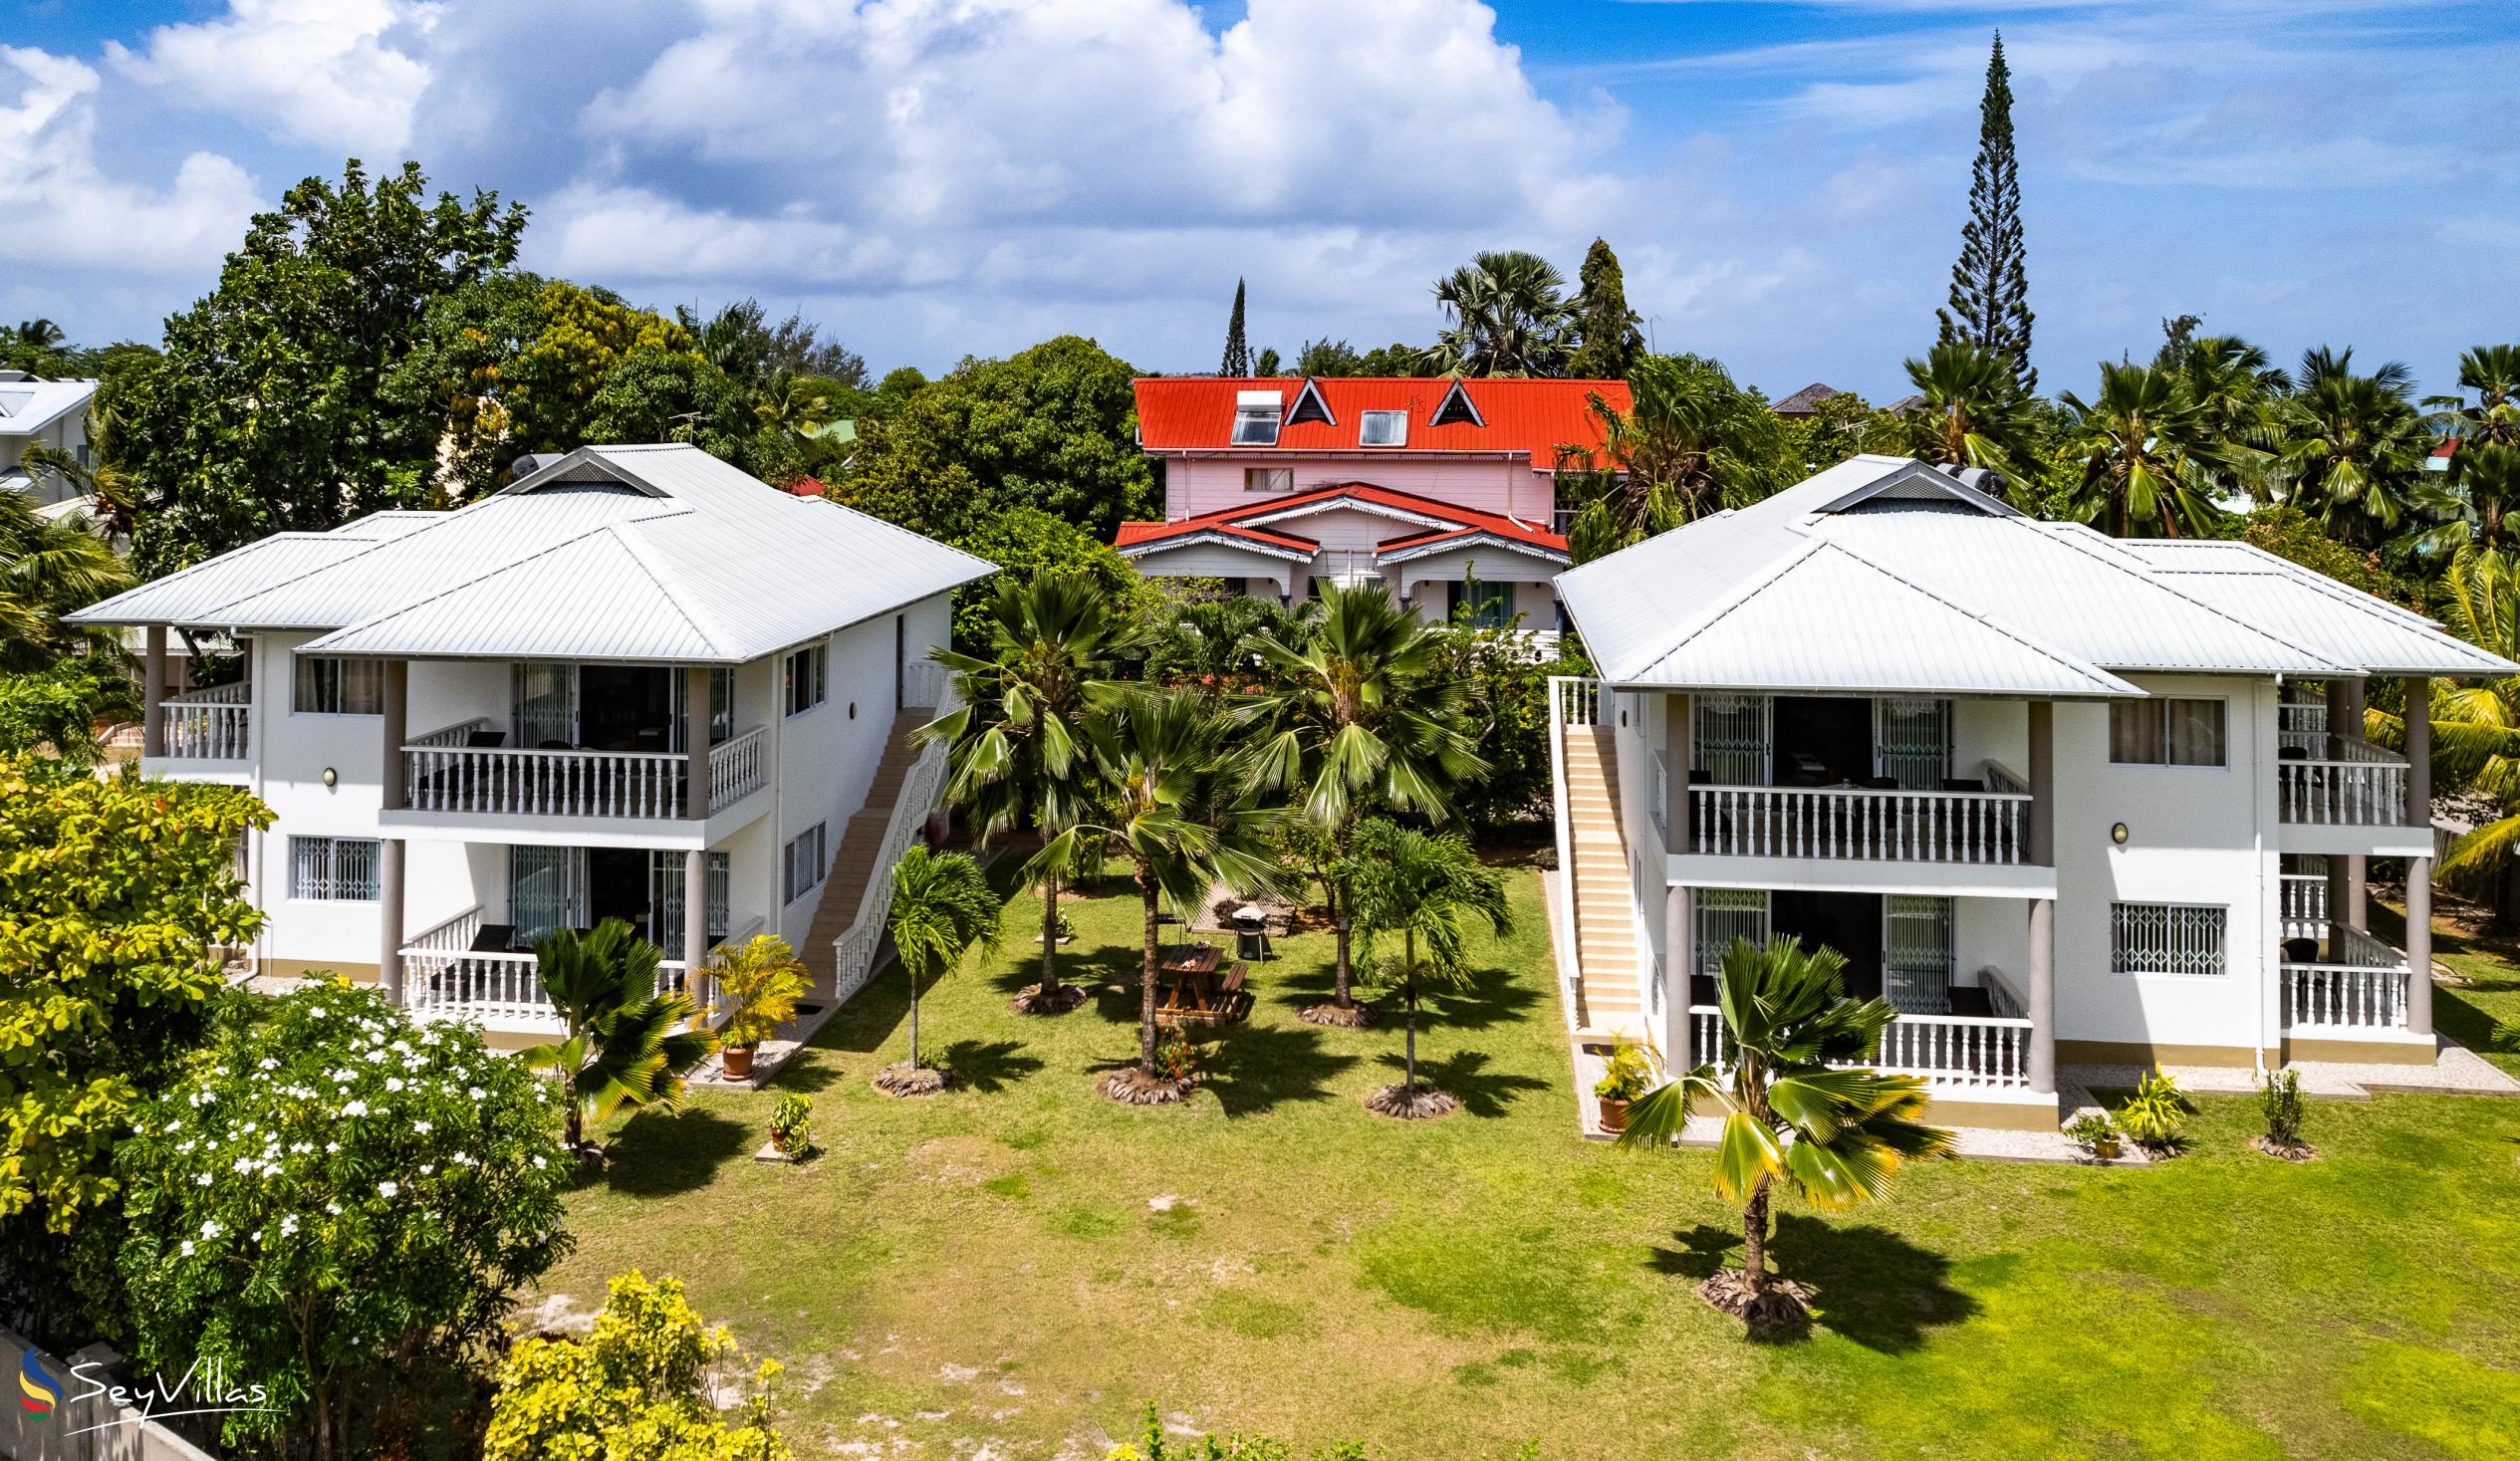 Foto 6: Casa Tara Villas - Aussenbereich - Praslin (Seychellen)